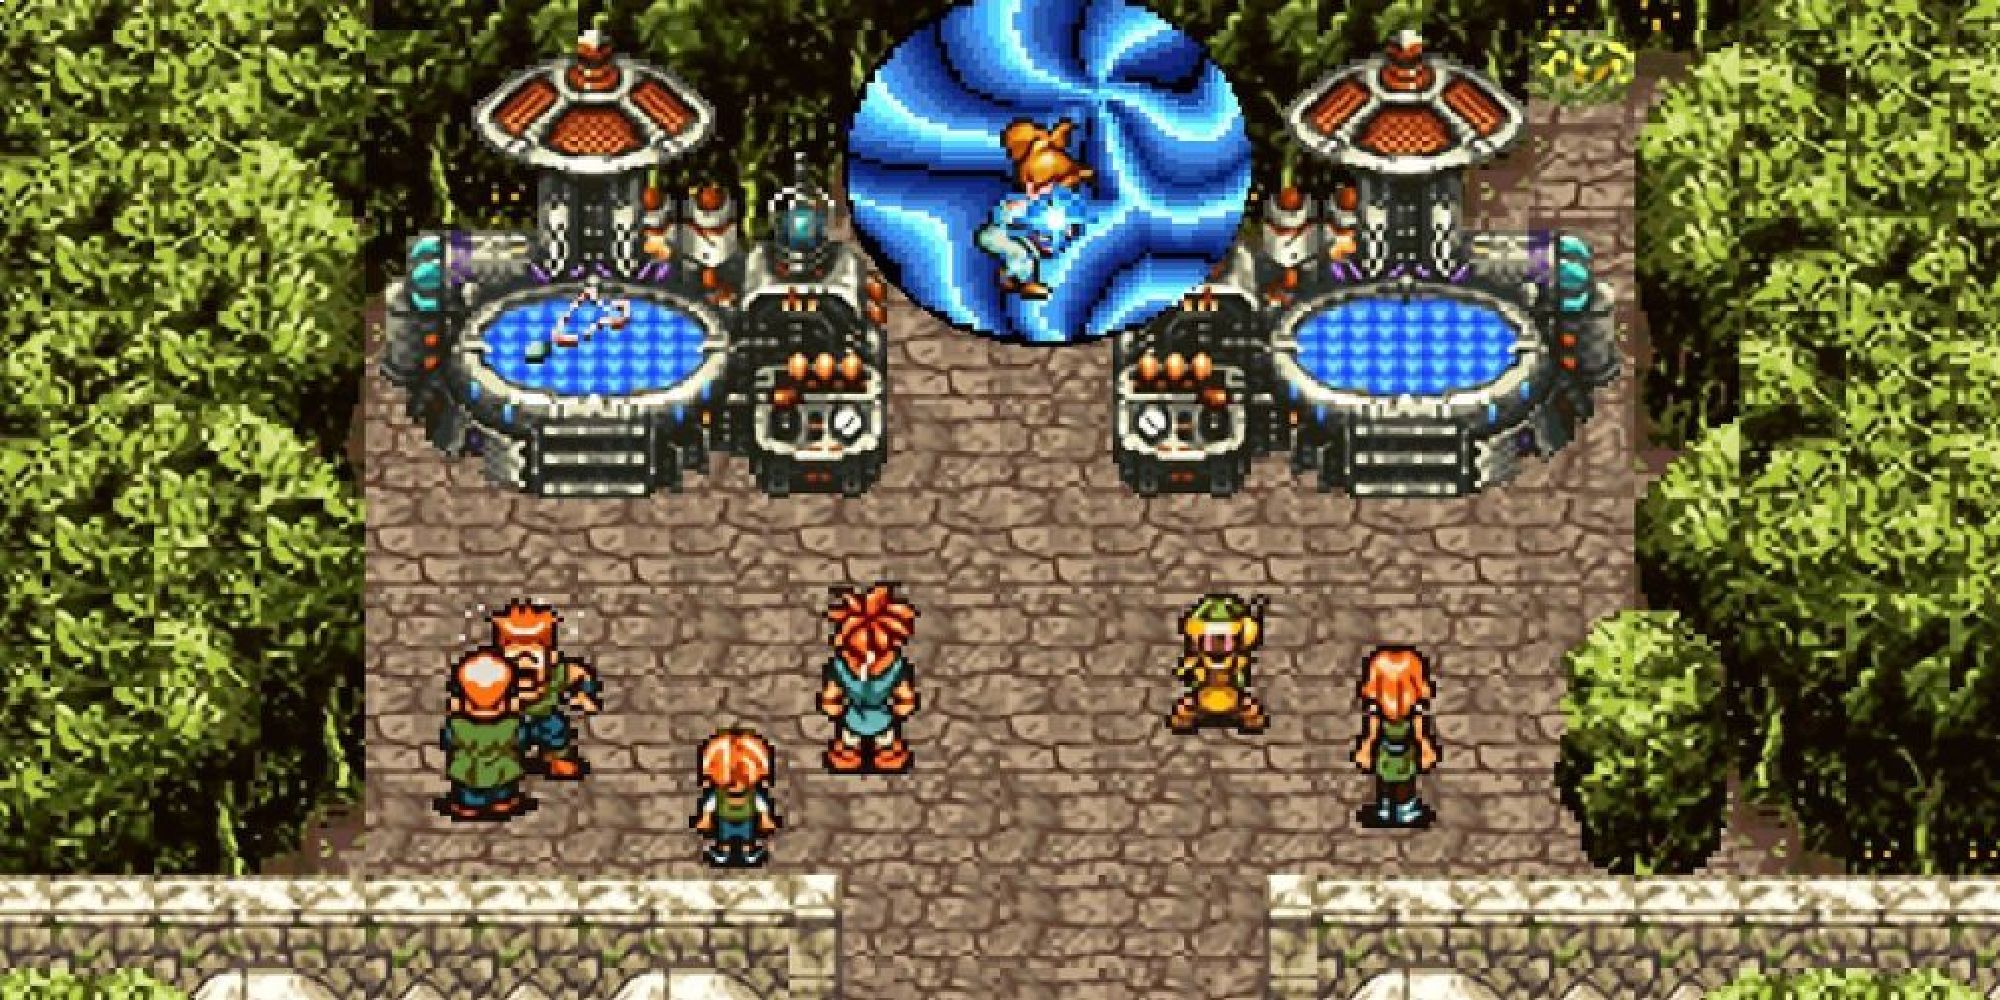 Captura de pantalla del disparador Chrono, que muestra varios sprites de personajes juntos en una escena.